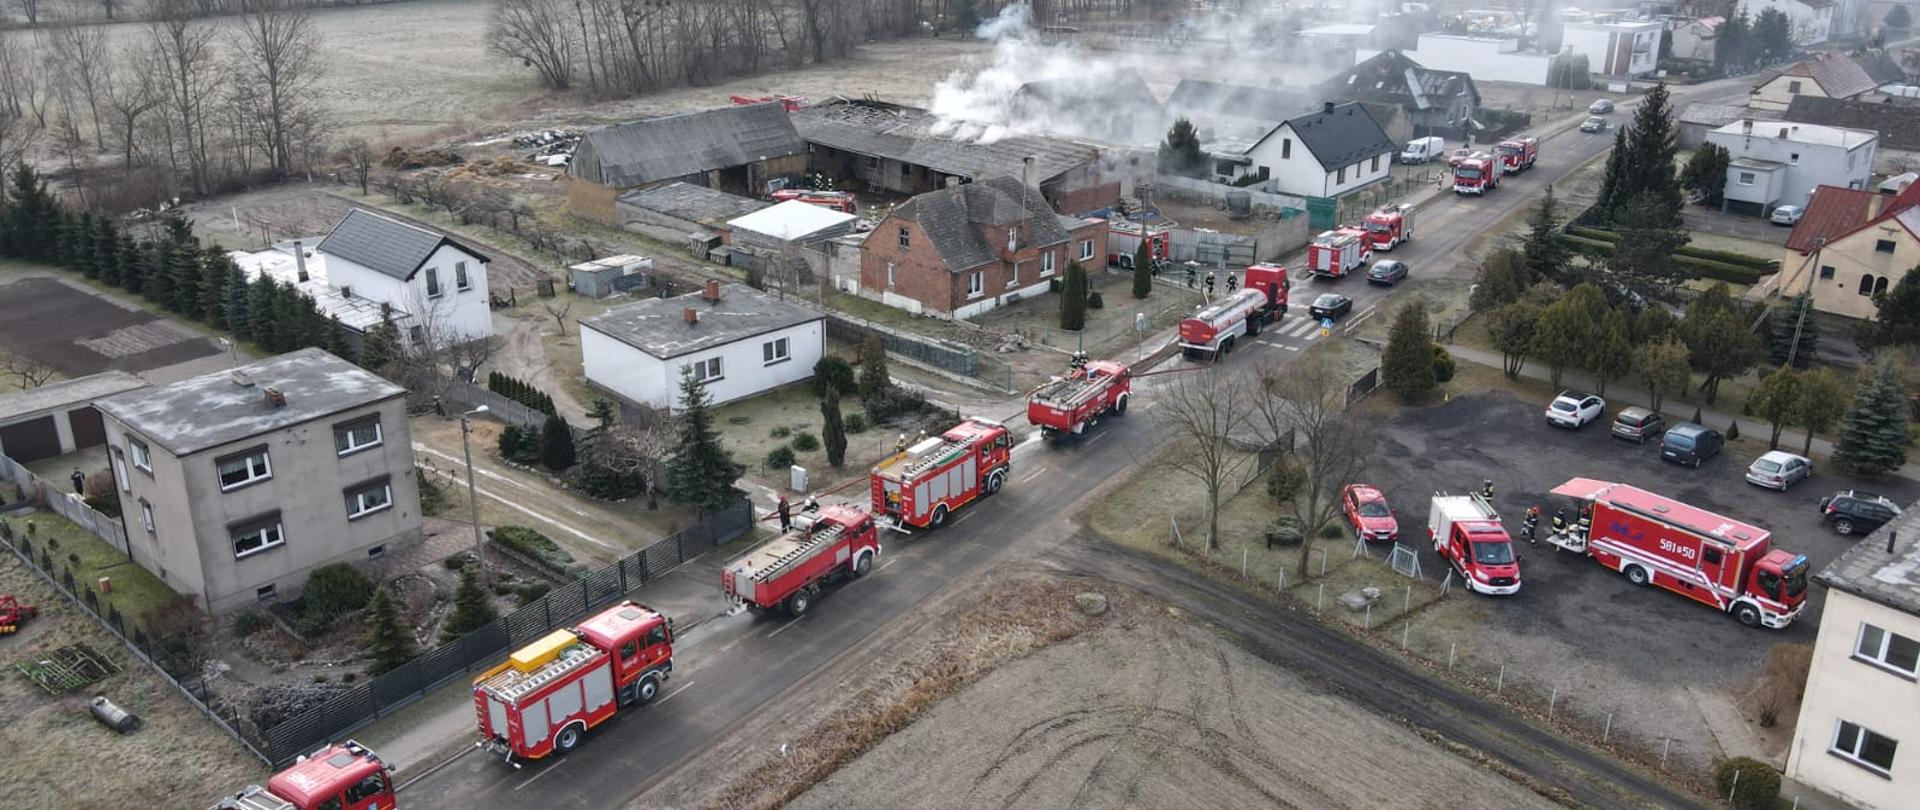 widok z góry ulica na której ustawione są samochody gaśnicze strażackie widoczne zabudowania z jednego z budynków wydobywa się biały dym